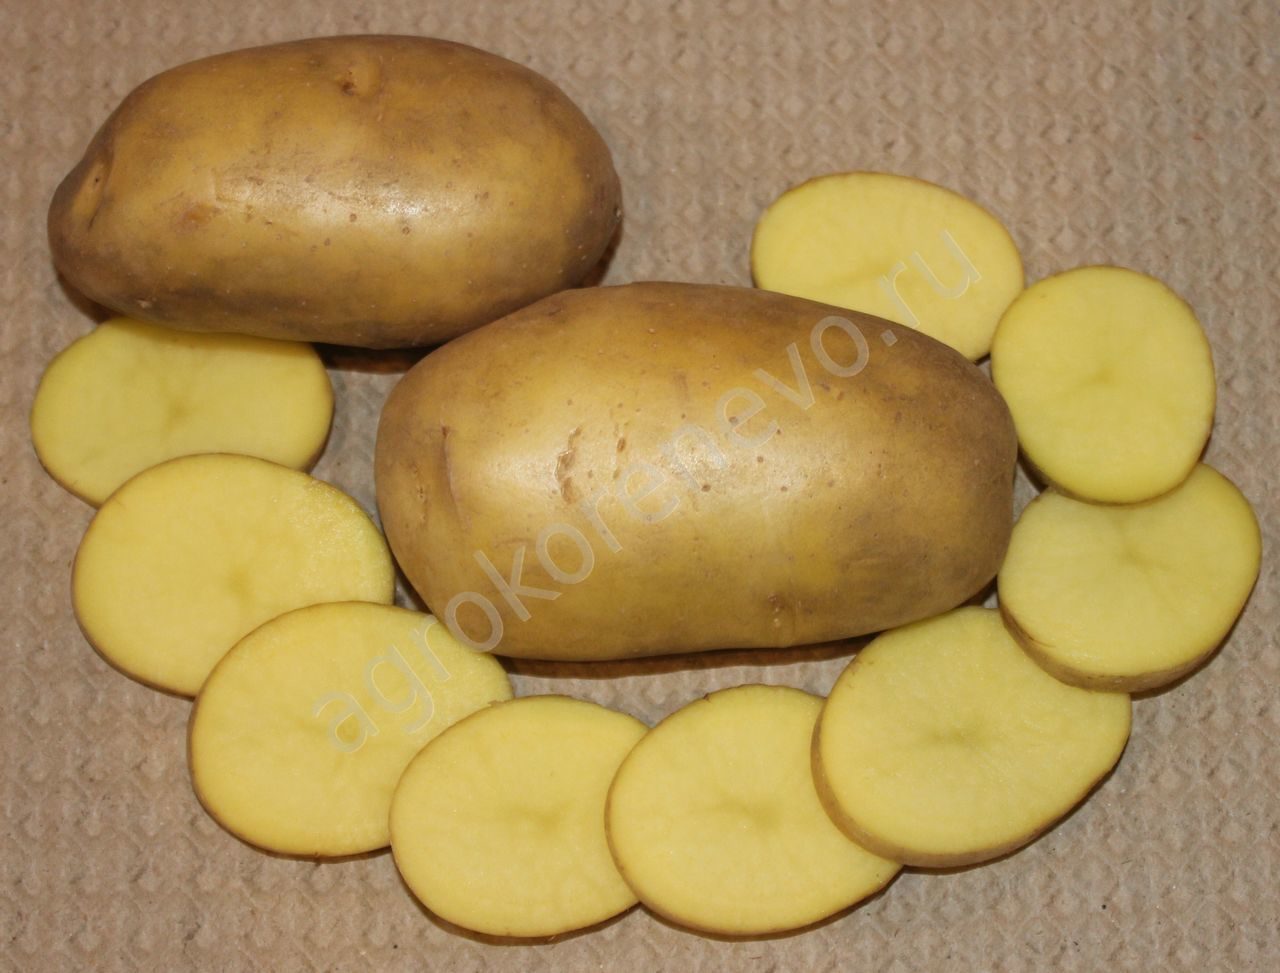 Картофель лилли: описание сорта, фото, отзывы о вкусовых качествах и характеристика урожайности, особенности посадки и выращивания